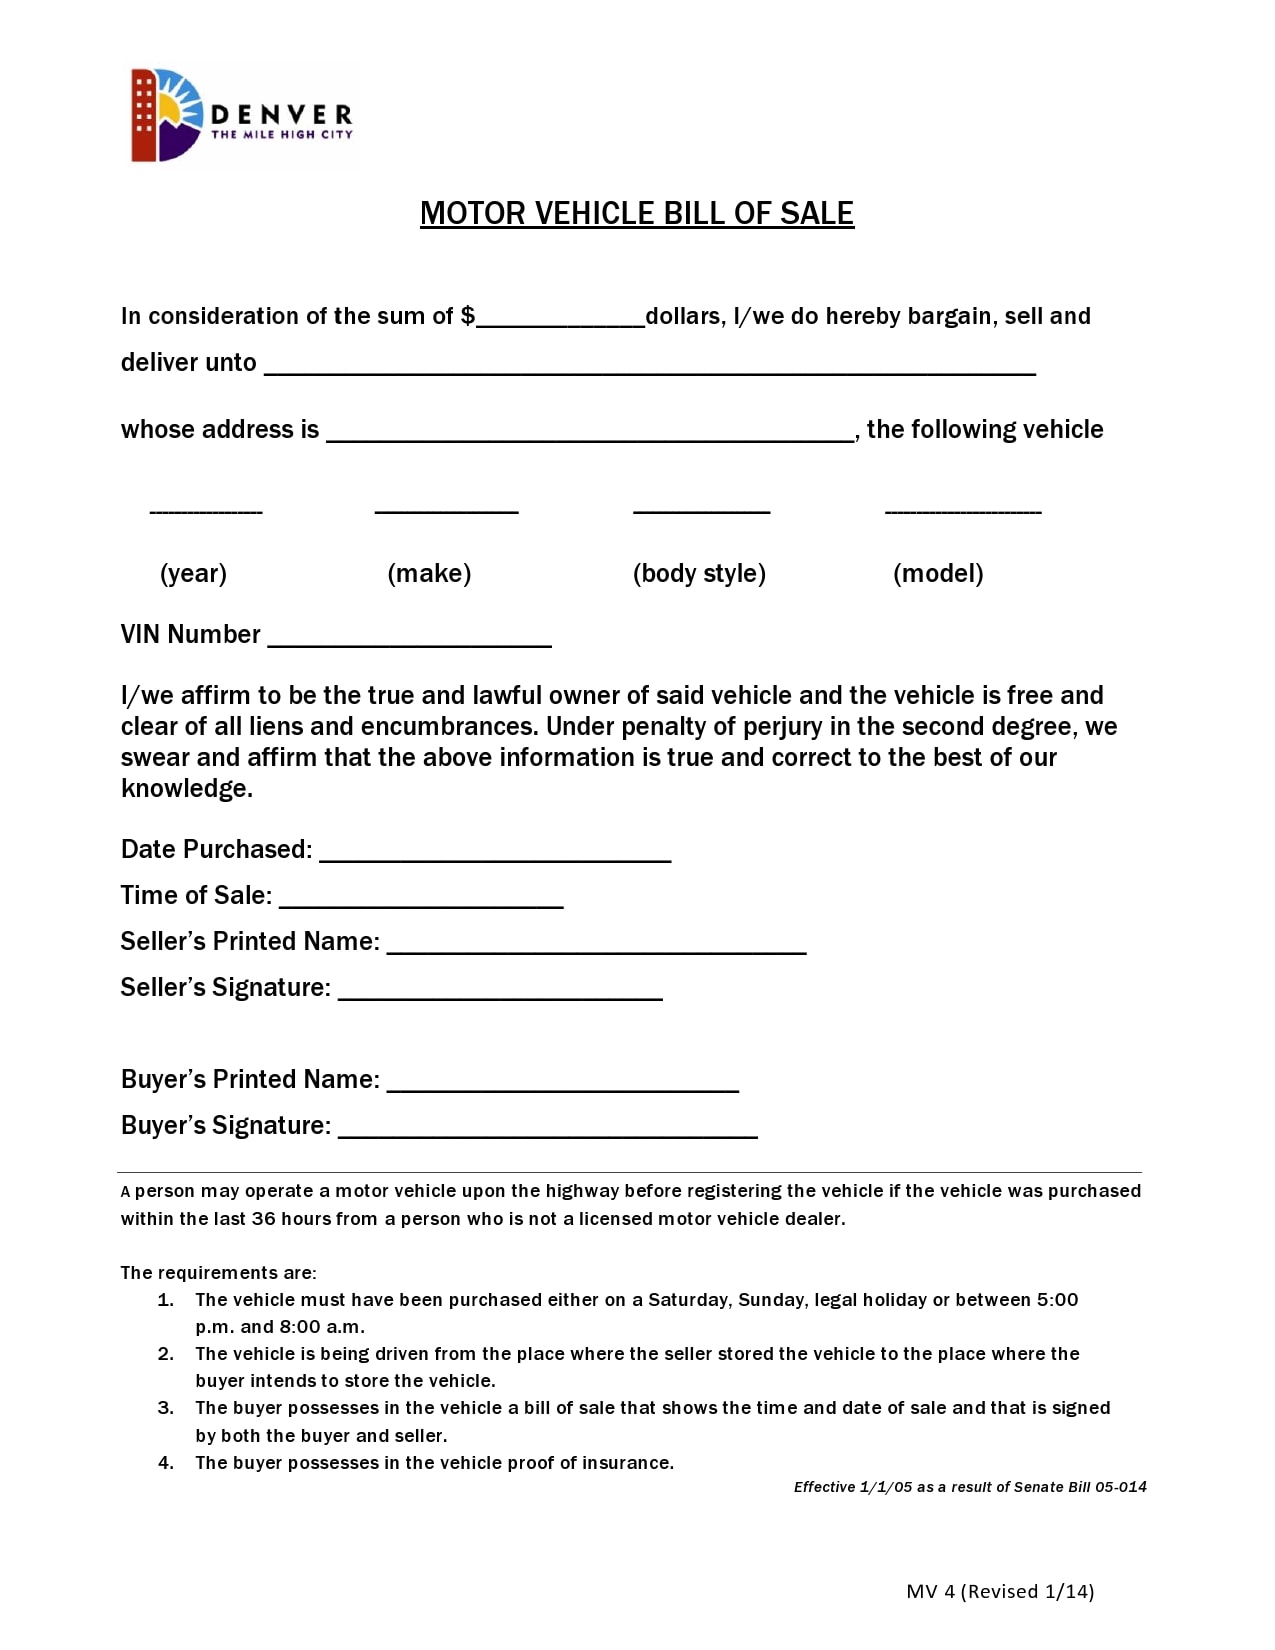 Printable Motorcycle Deed Of Sale Of Motor Vehicle Printable Form